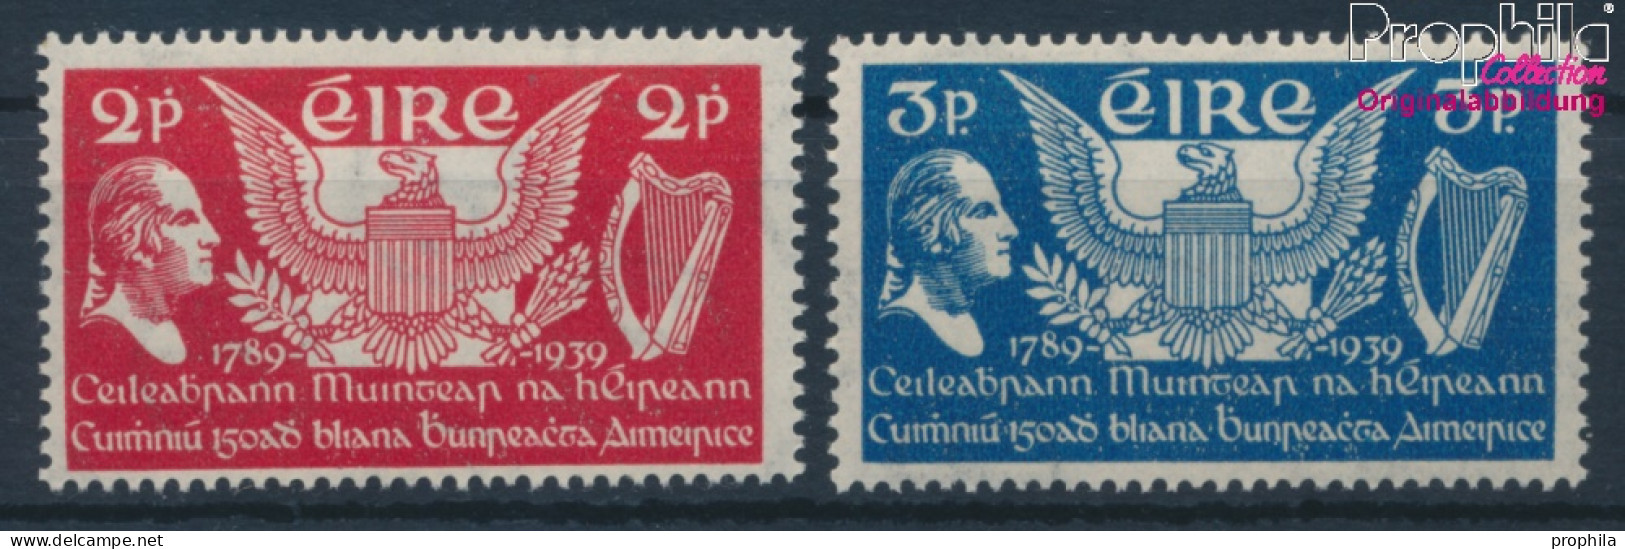 Irland Postfrisch Verfassung 1939 Verfassung  (10398325 - Ongebruikt